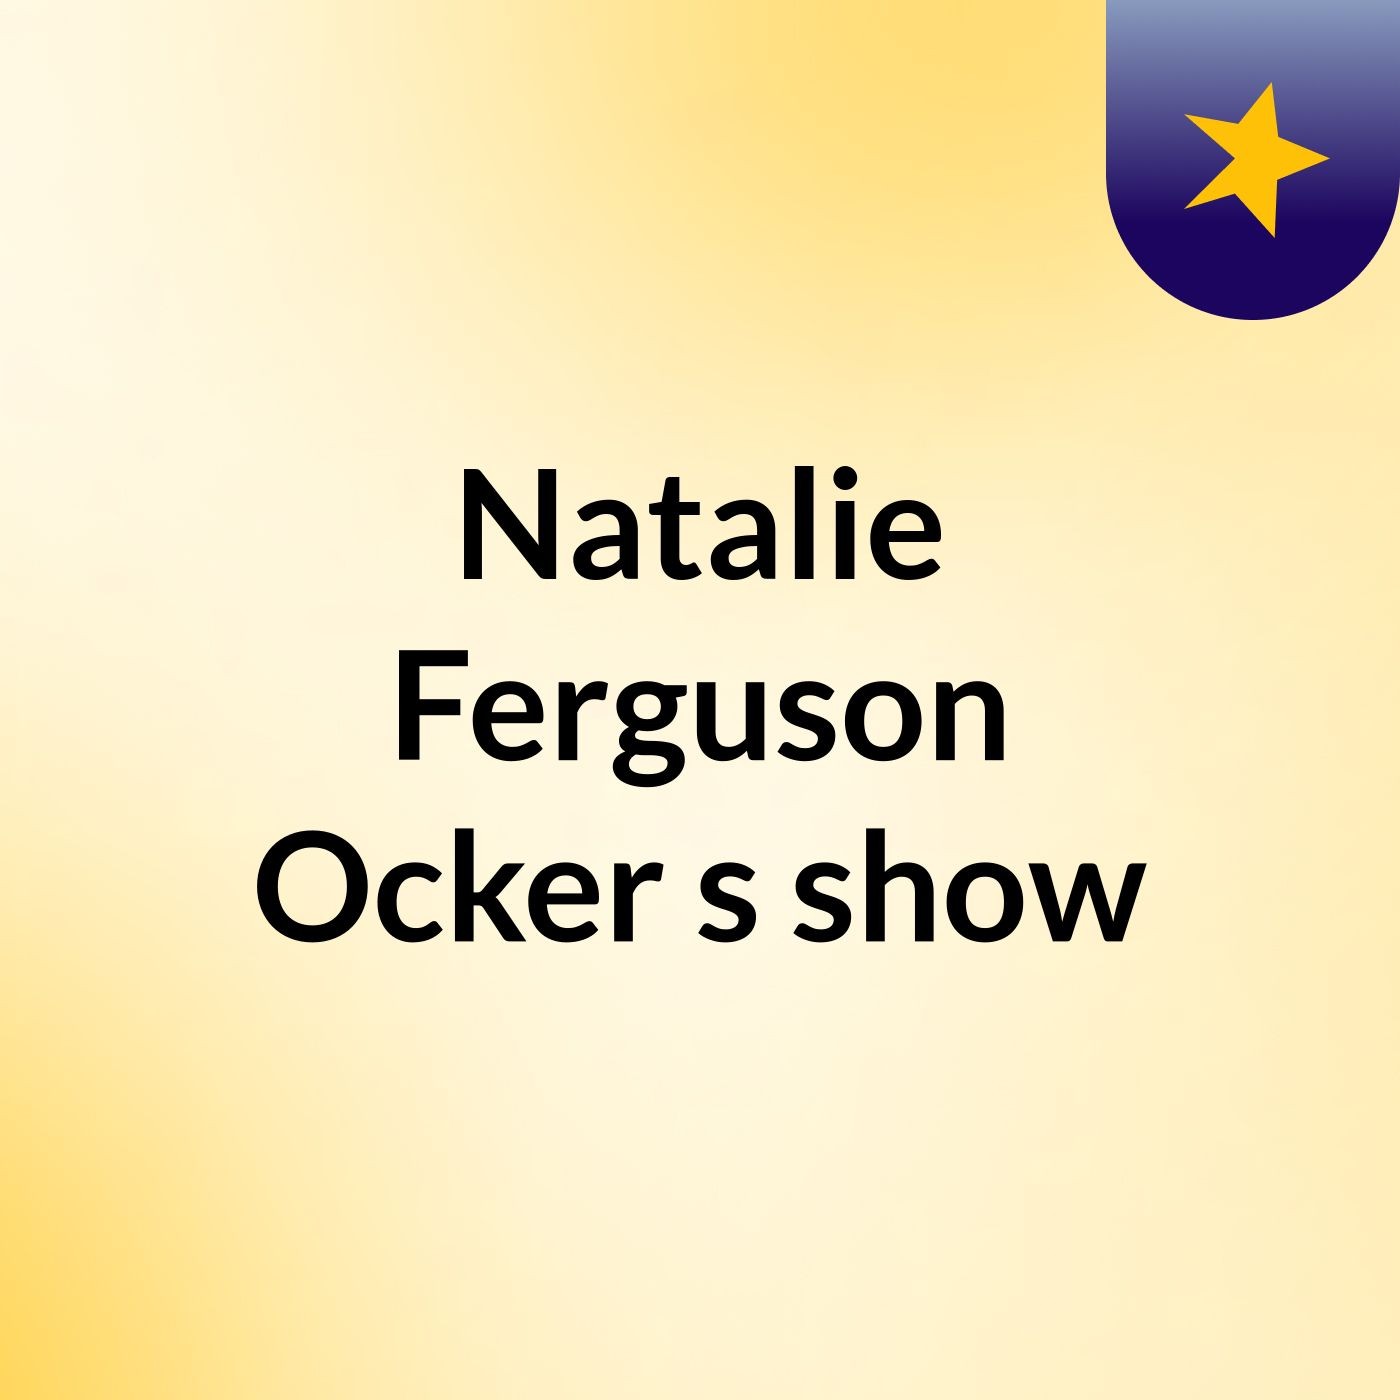 Episode 4 - Natalie Ferguson Ocker's show